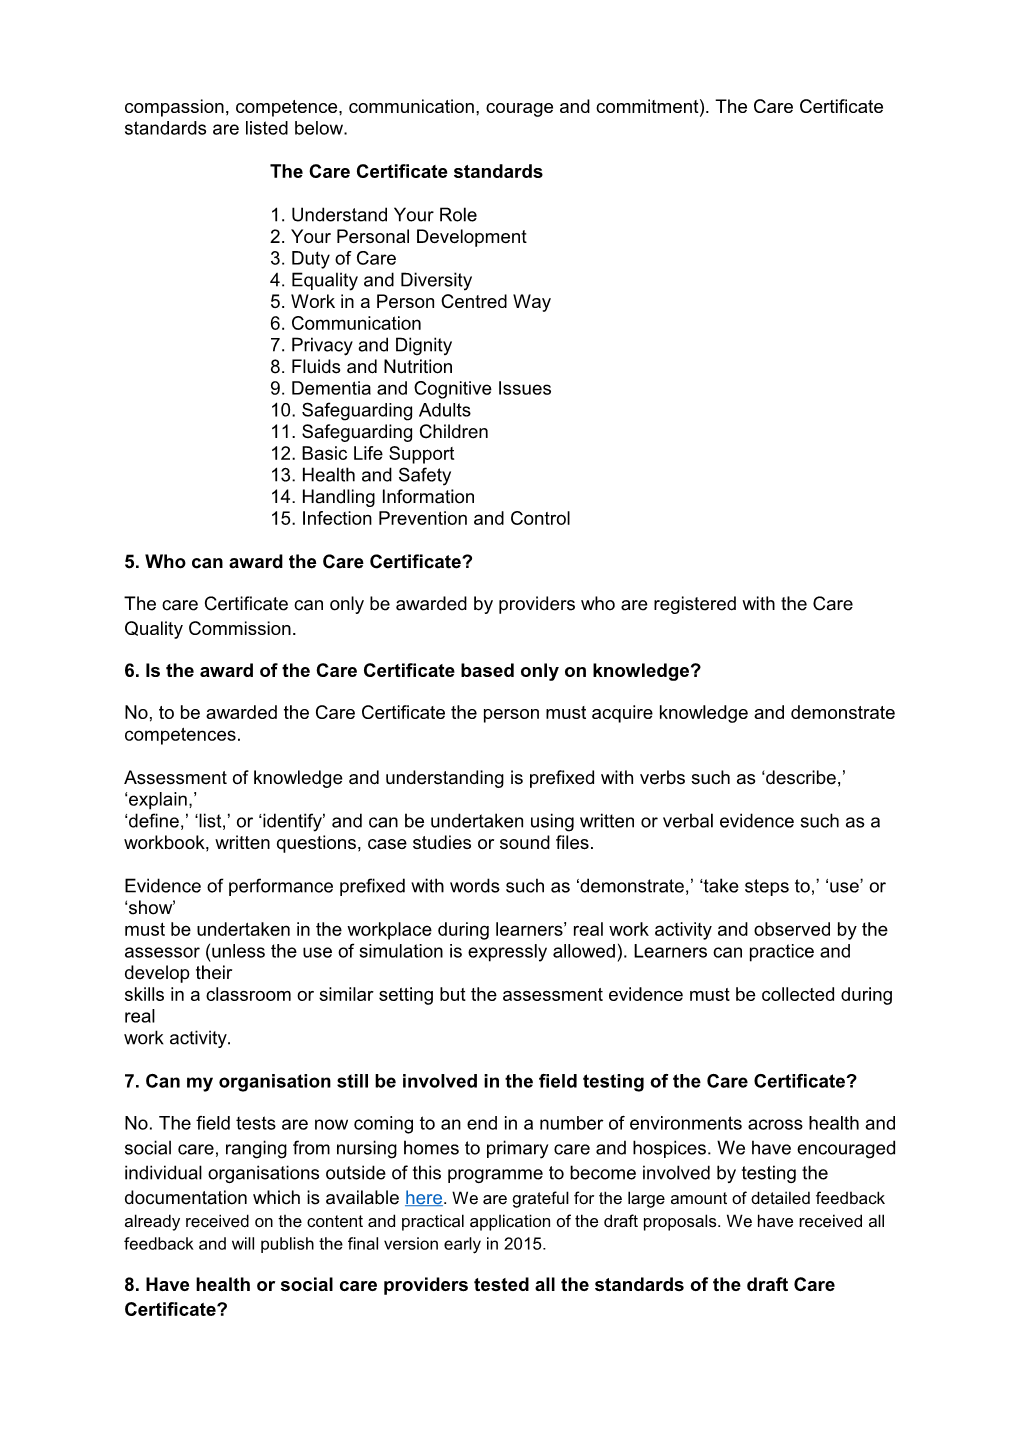 Care-Certificate-FAQ-December-2014